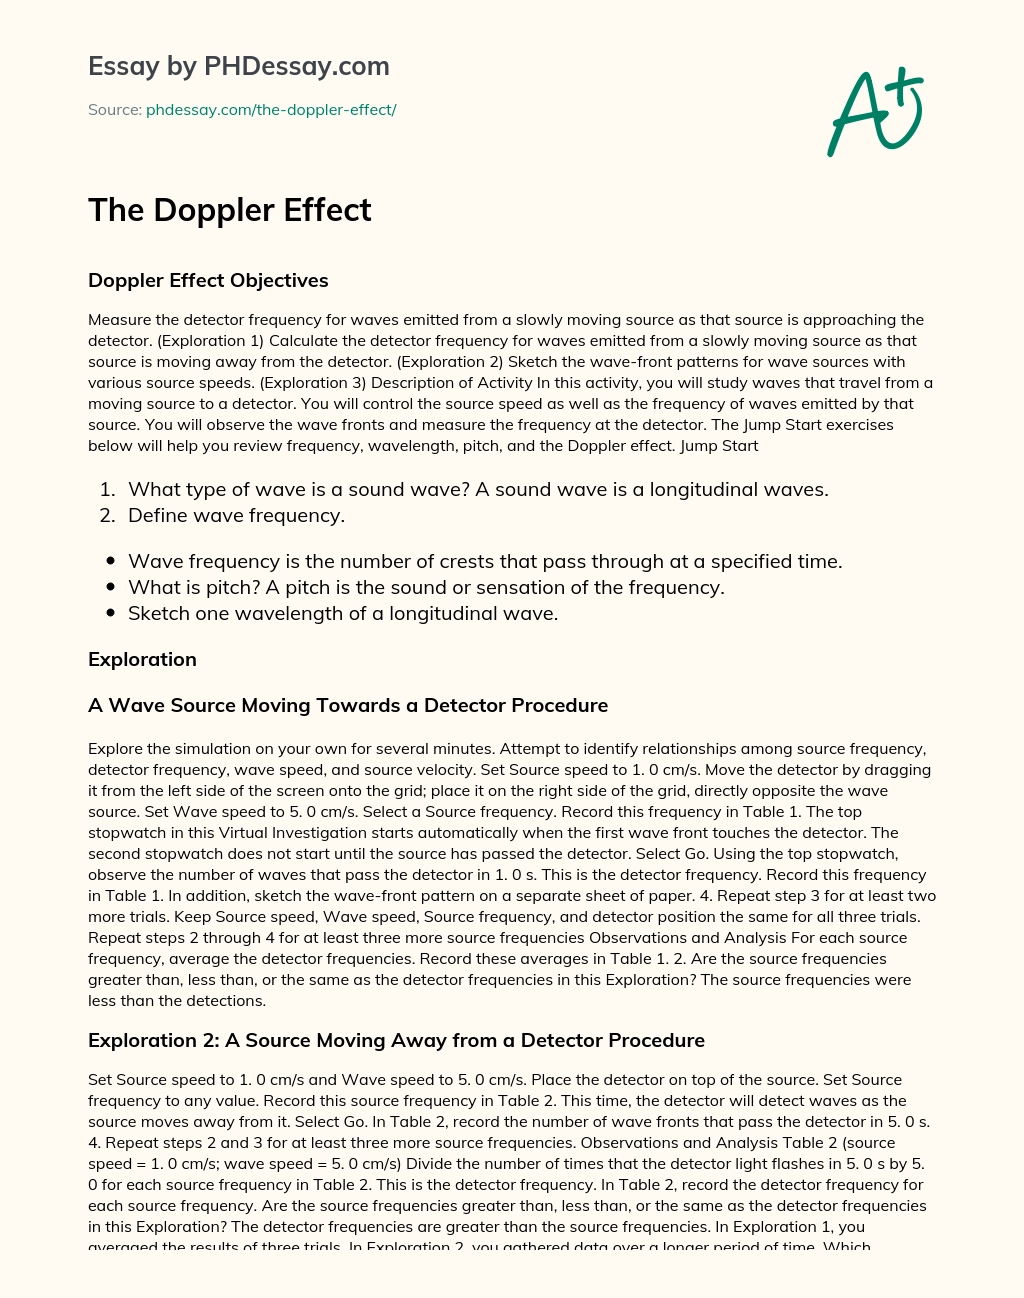 The Doppler Effect essay